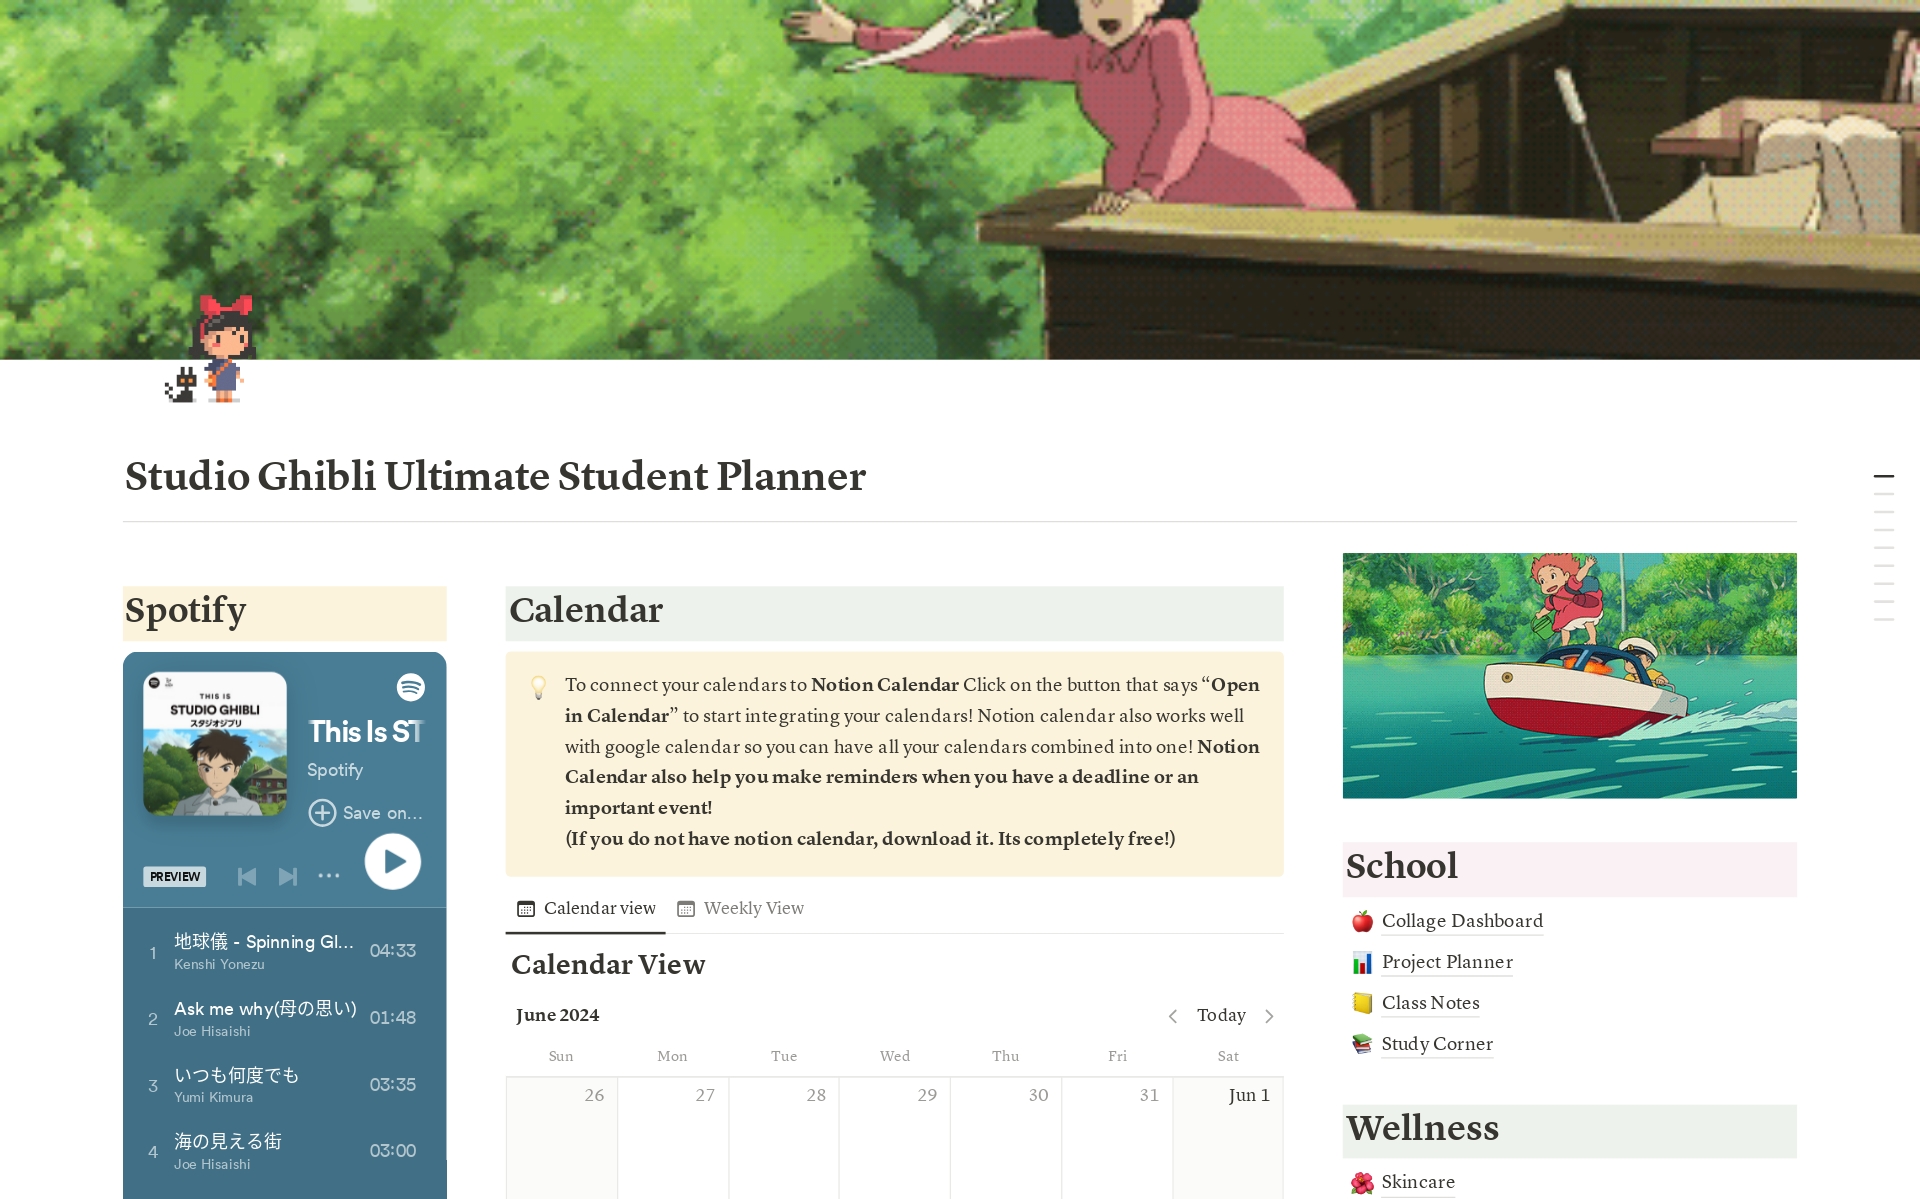 Uma prévia do modelo para Studio Ghibli Ultimate Student Planner